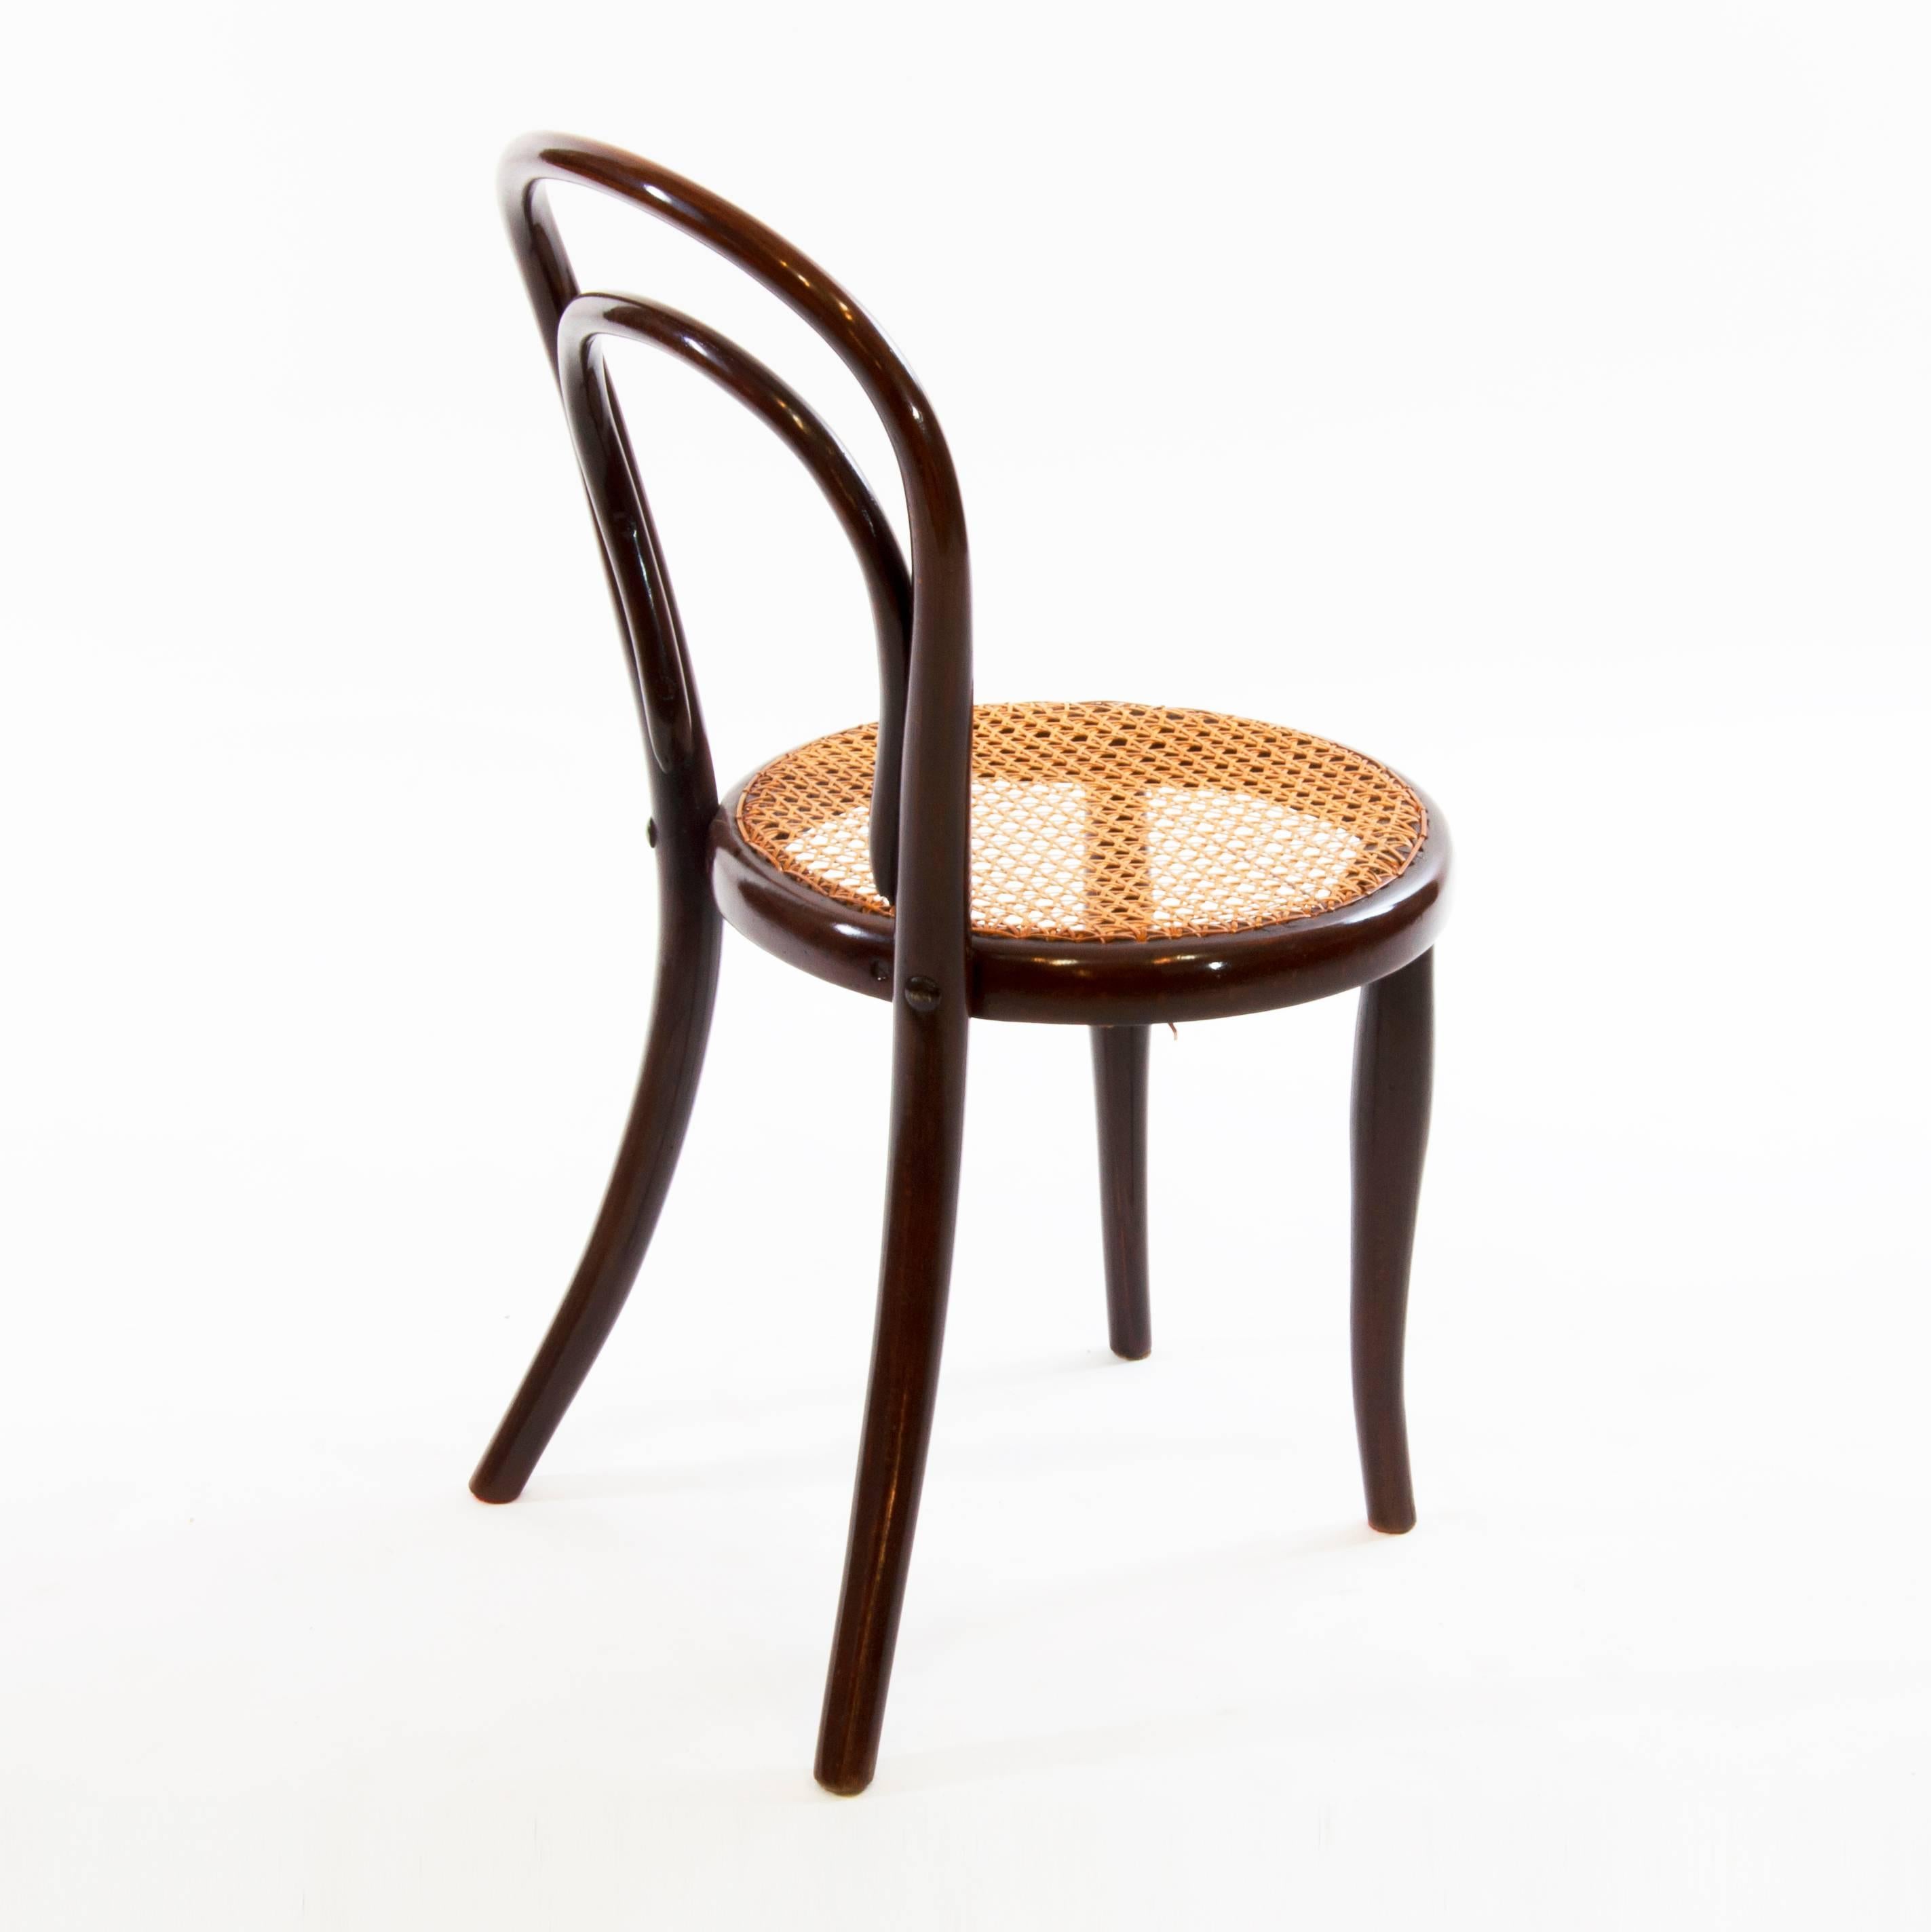 Sehr seltener, antiker und österreichischer Thonet-Stuhl, der zwischen 1890-1900 hergestellt wurde und von den Gebrüdern Thonet entworfen wurde.
Das Unternehmen Thonet wurde von Michael Thonet gegründet und von seinem Sohn stark ausgebaut. Sie